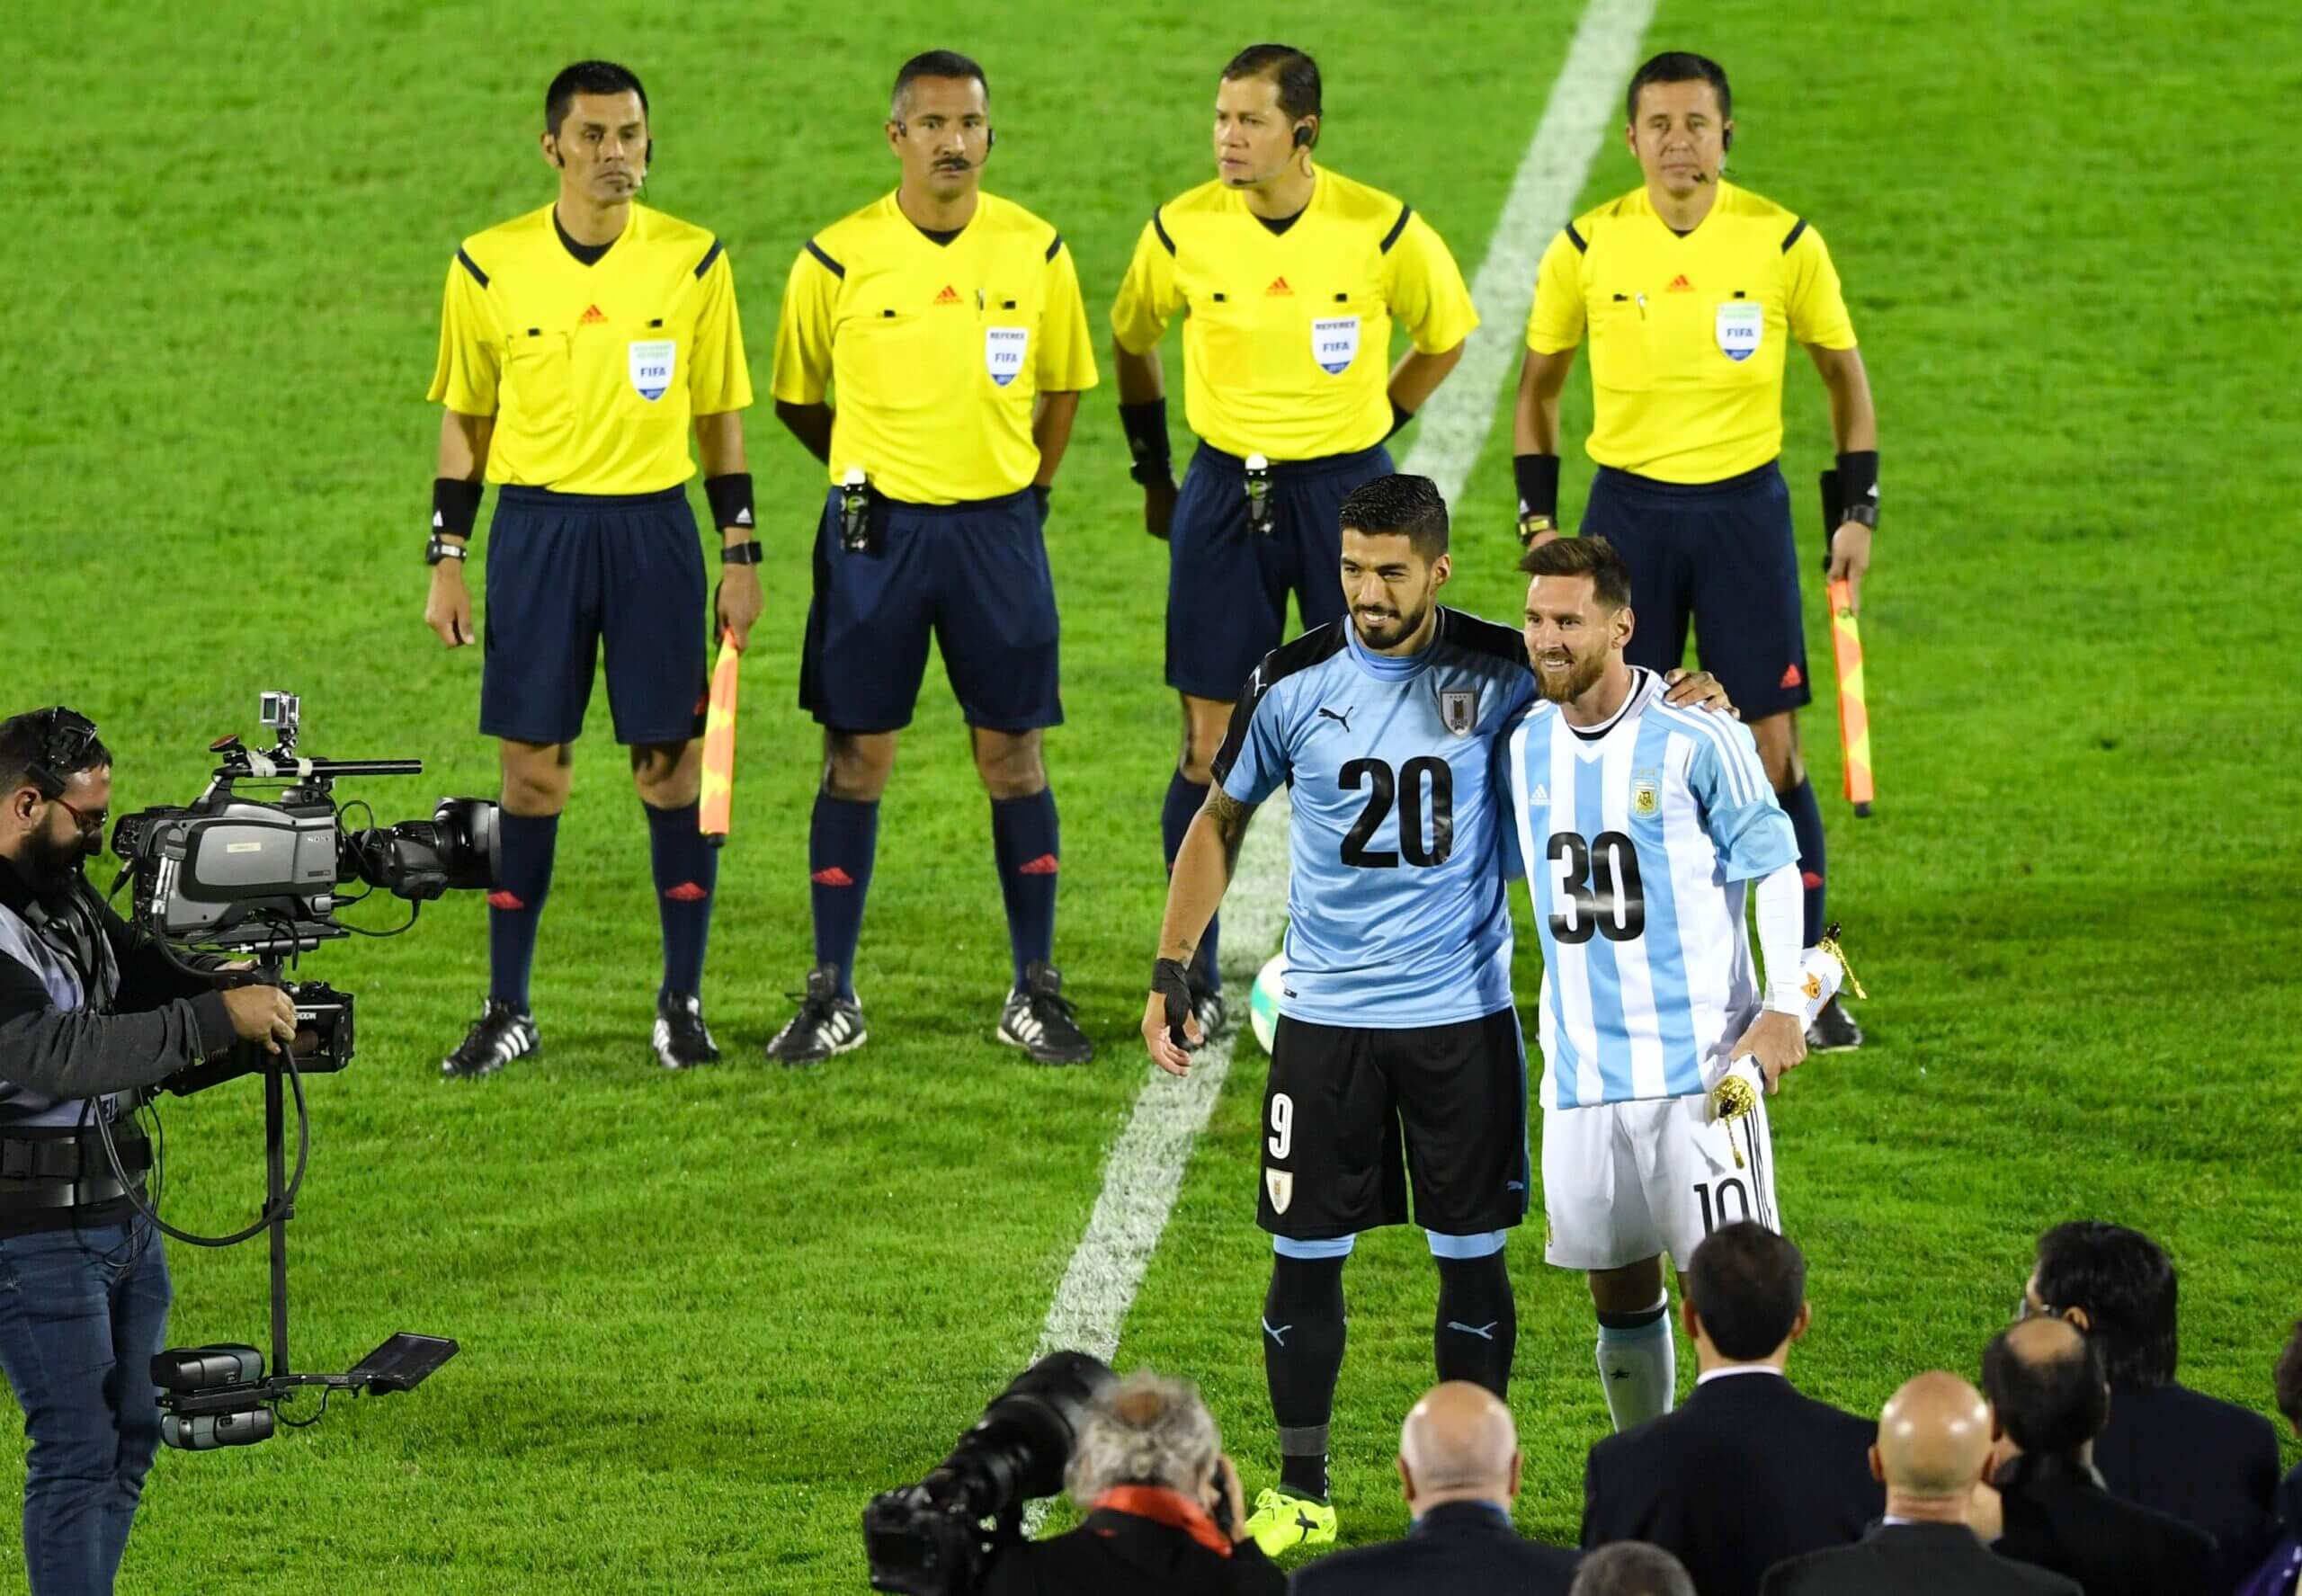 Năm 2017, Messi và Suarez đã mặc áo 2030 để khẳng định quyết tâm đem World Cúp 2030 về Nam Mỹ